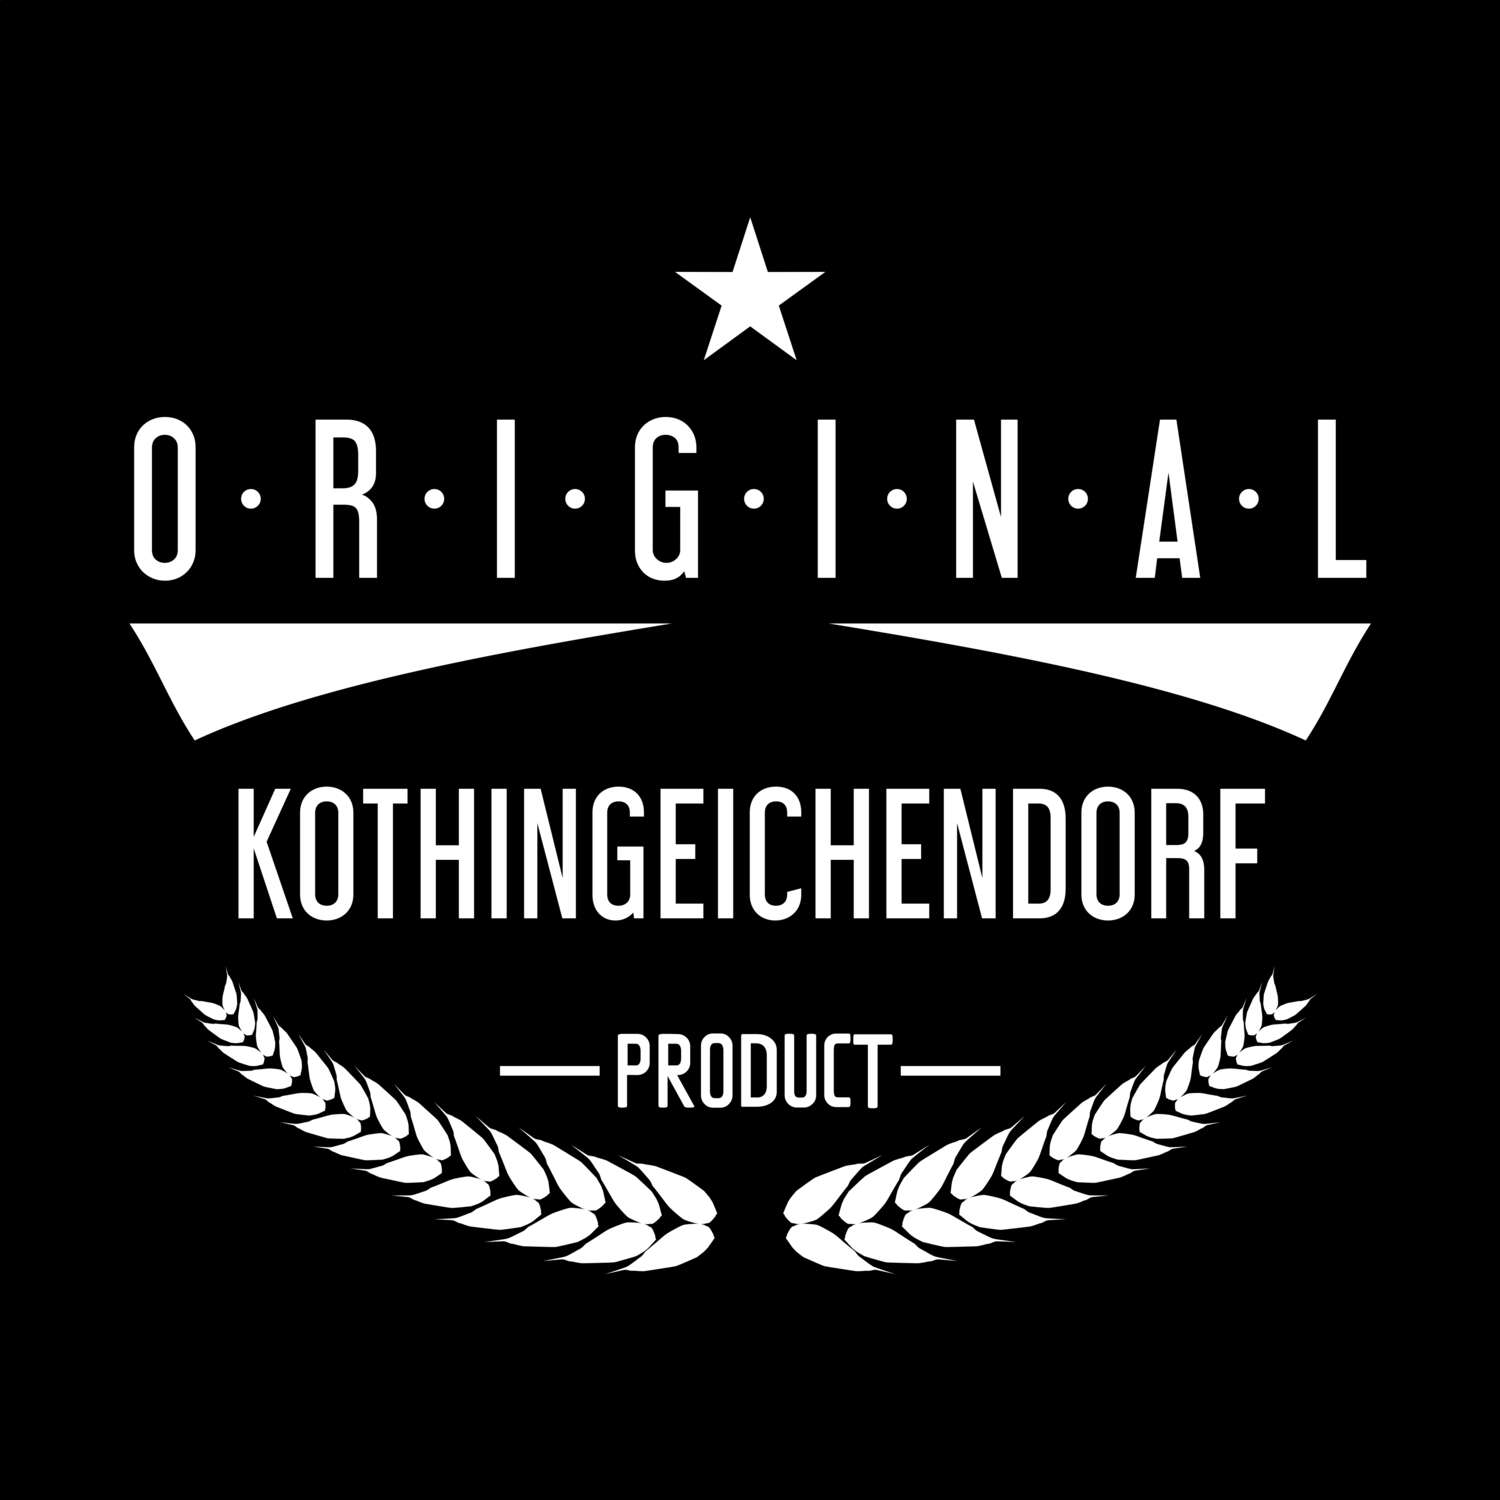 Kothingeichendorf T-Shirt »Original Product«